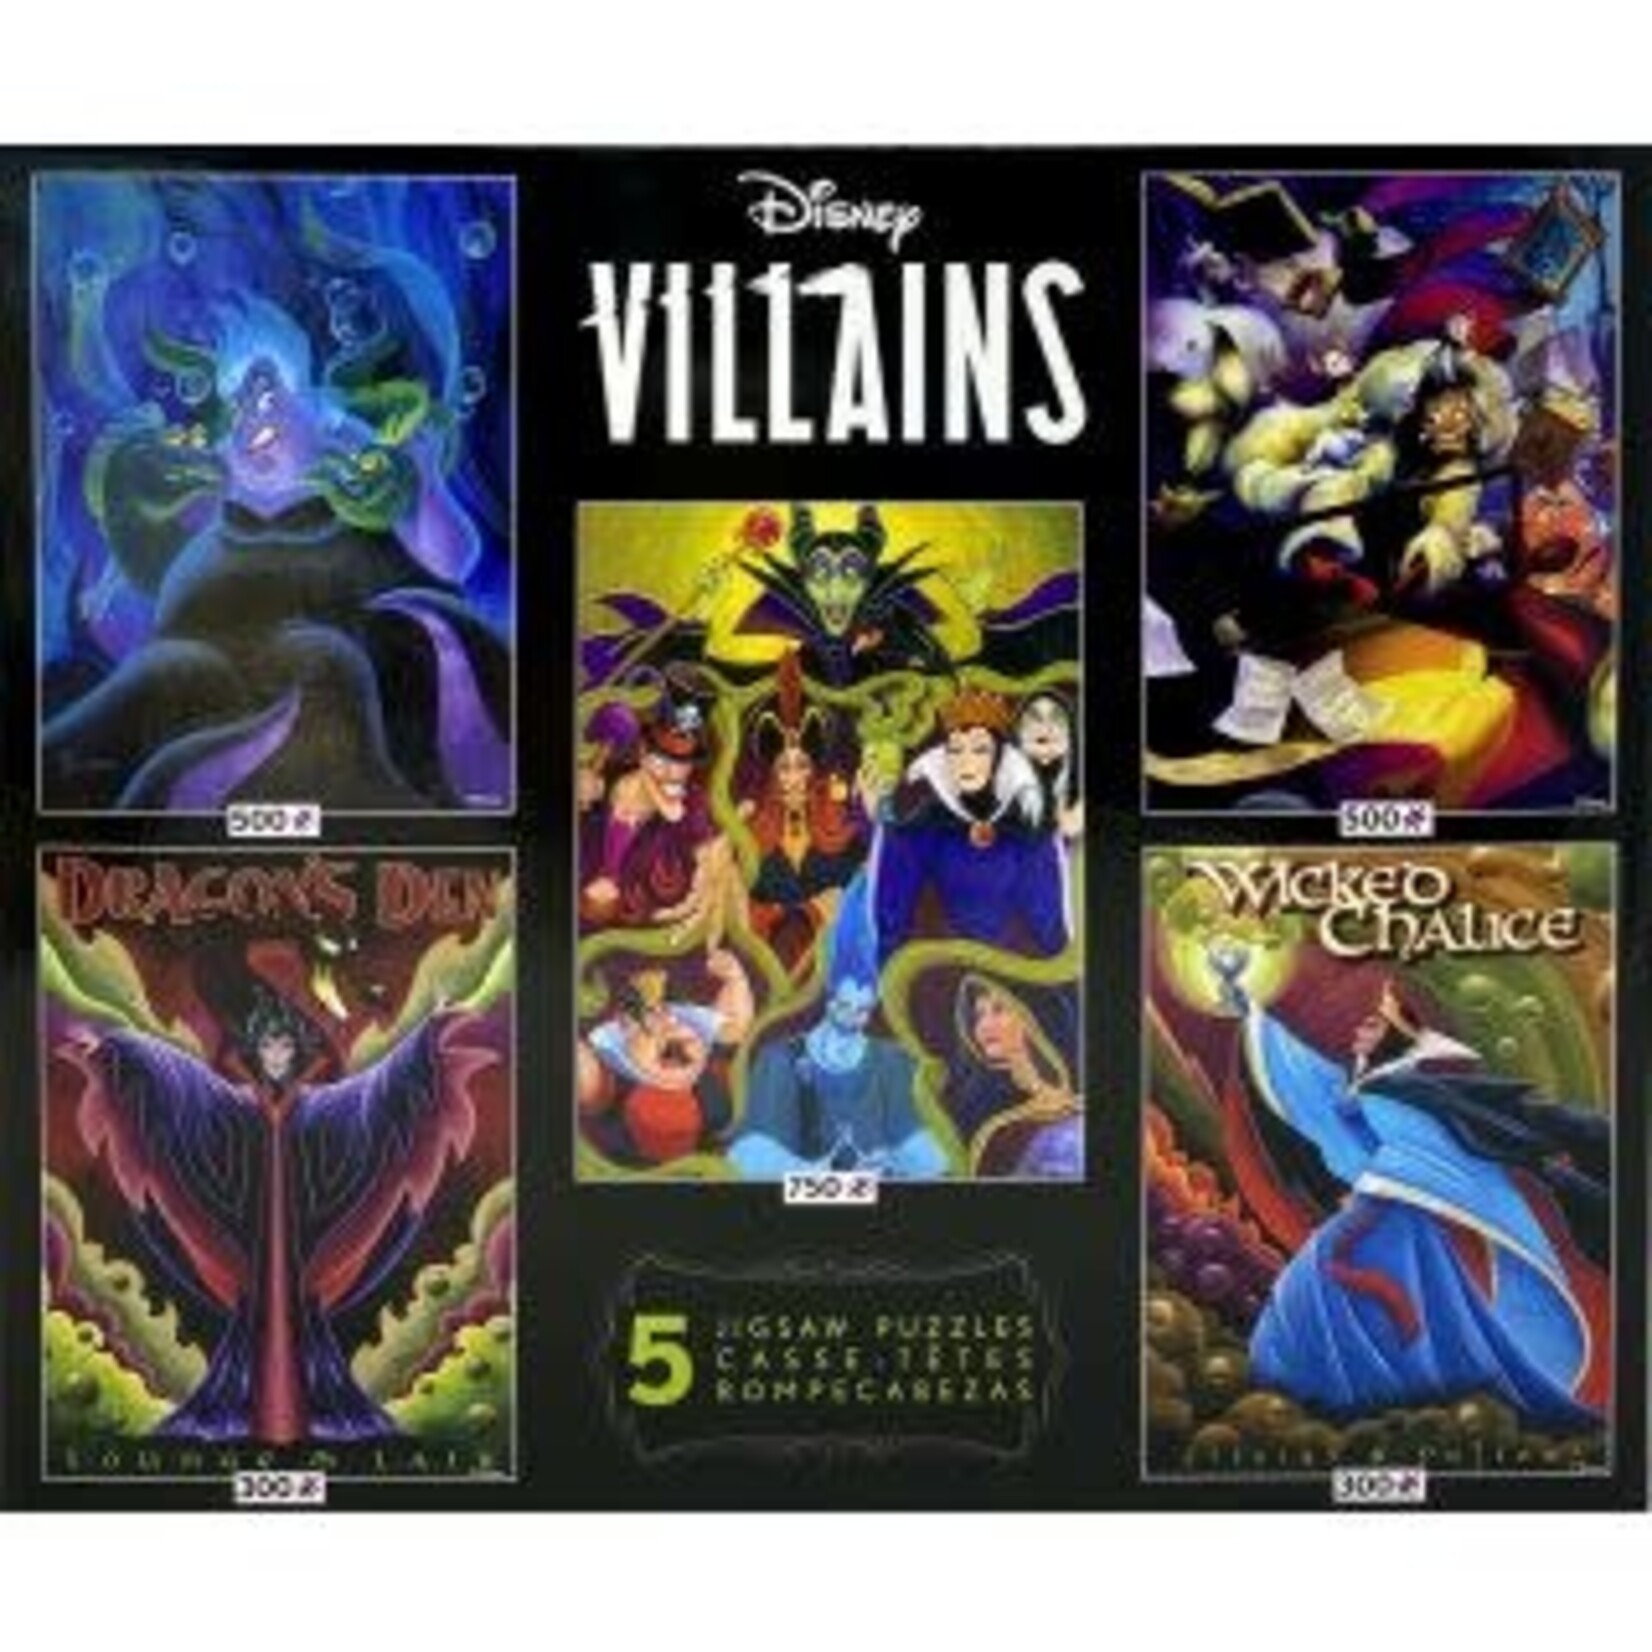 Disney: Villains 5 in 1 500 Piece Puzzle Set